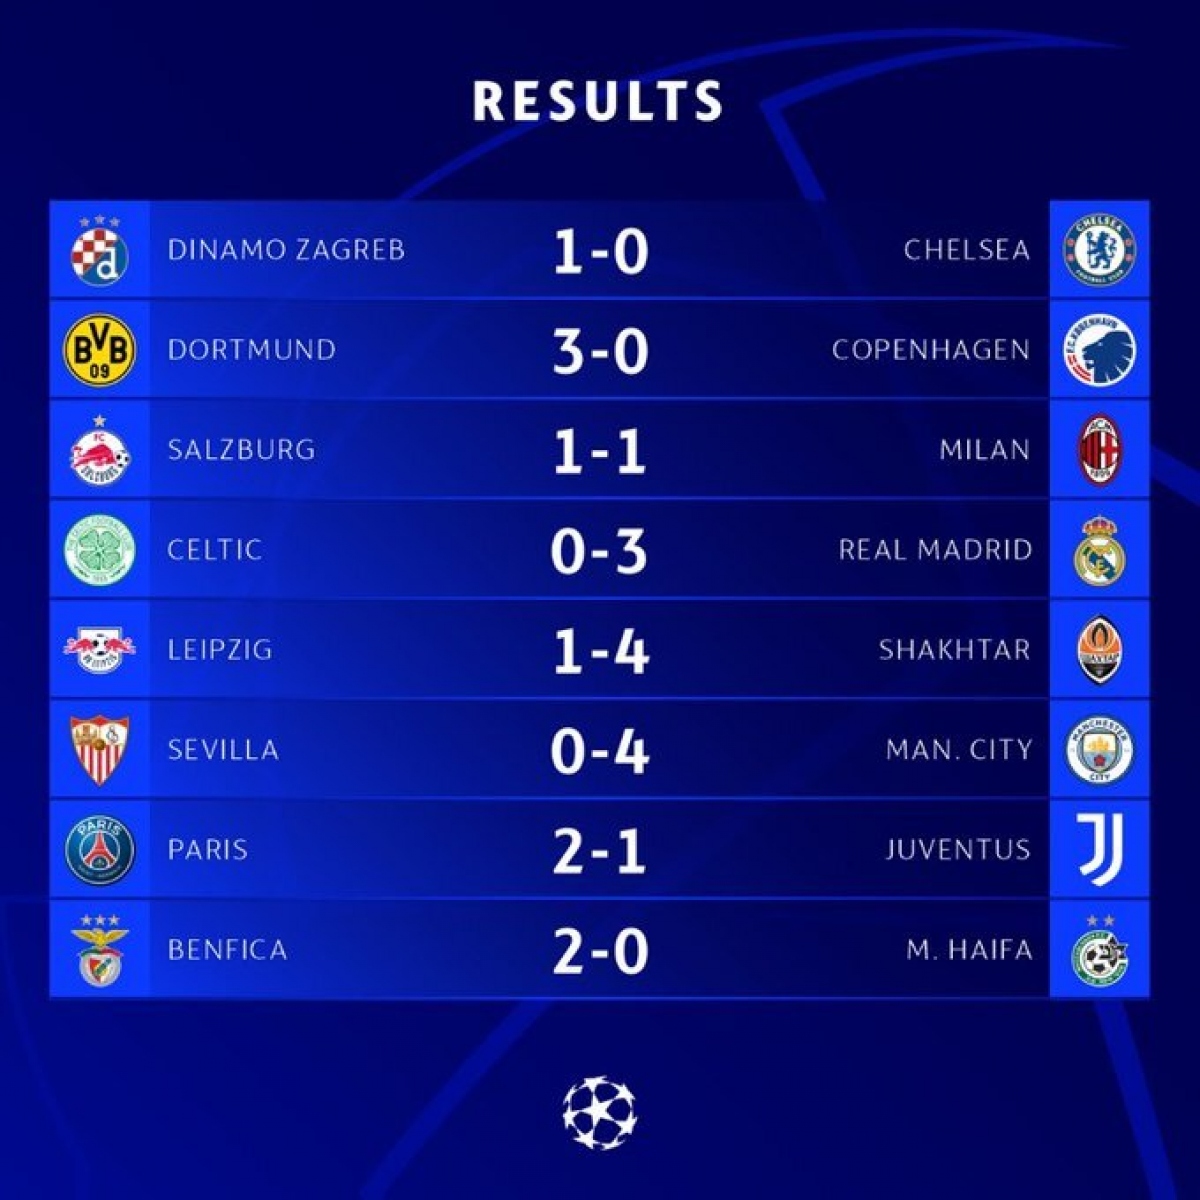 Kết quả Cúp C1 châu Âu: Man City và Real Madrid đại thắng, Chelsea thua muối mặt - Ảnh 1.